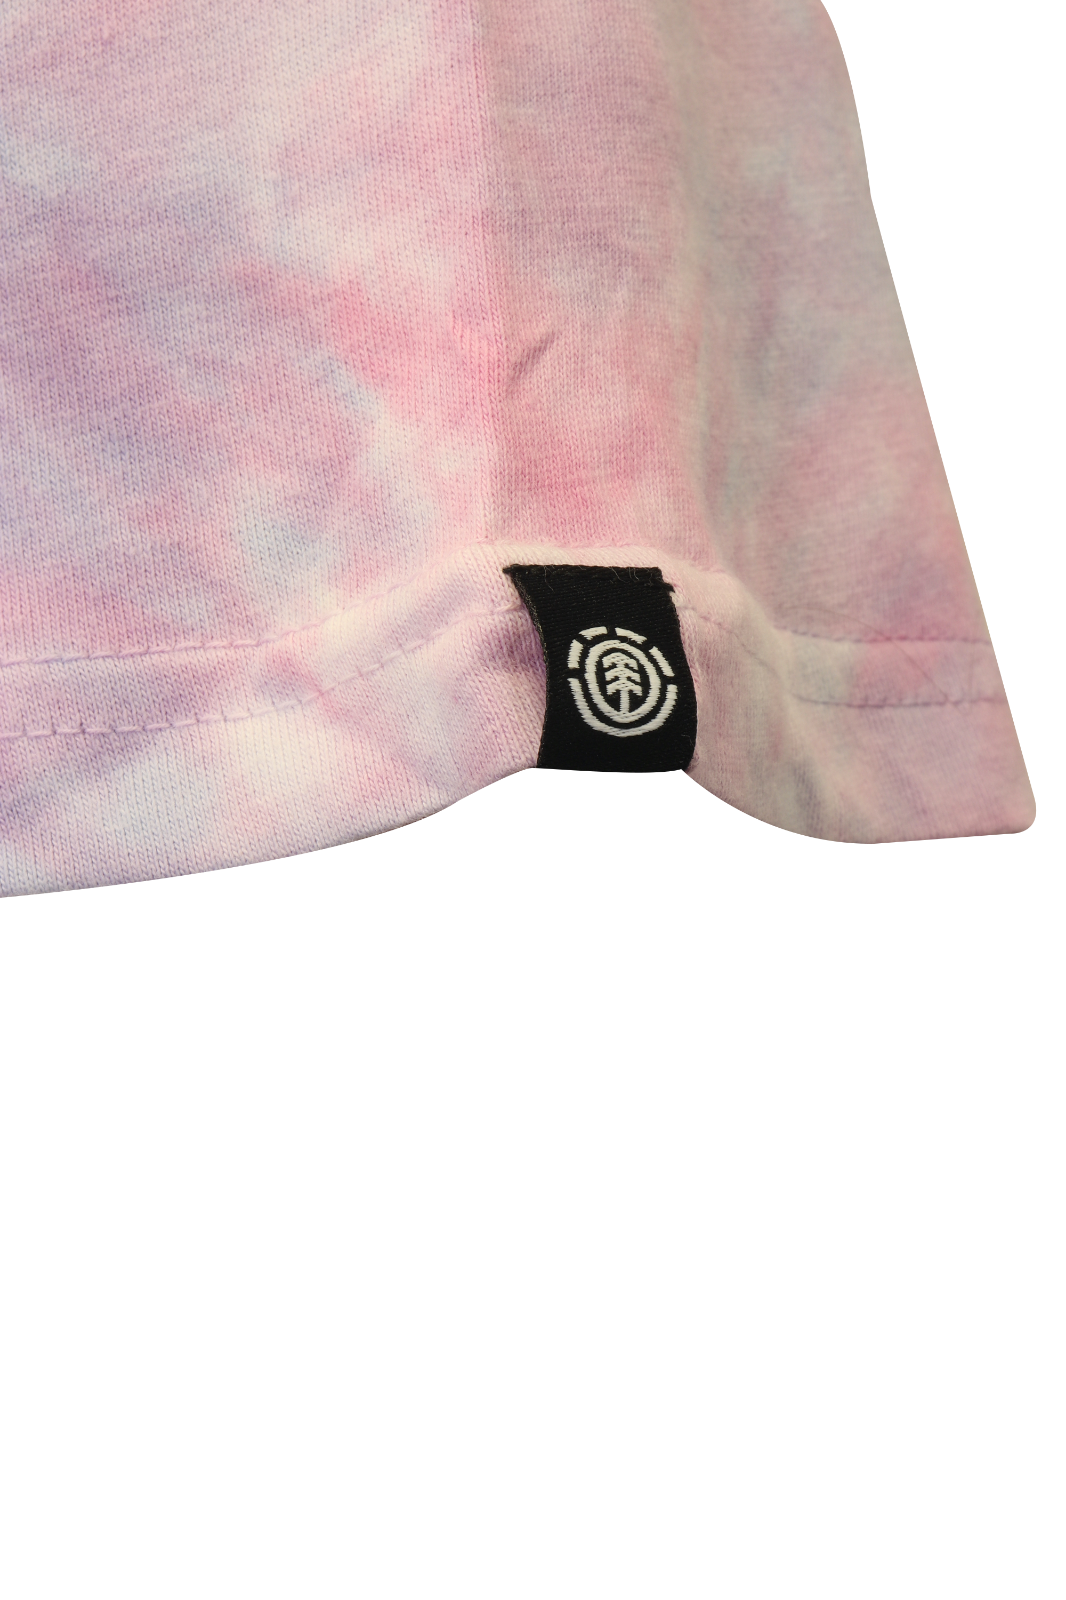 Element Men's T-Shirt Pink Purple Tie-Dye Four Elements Peace Graphic S/S (S15)